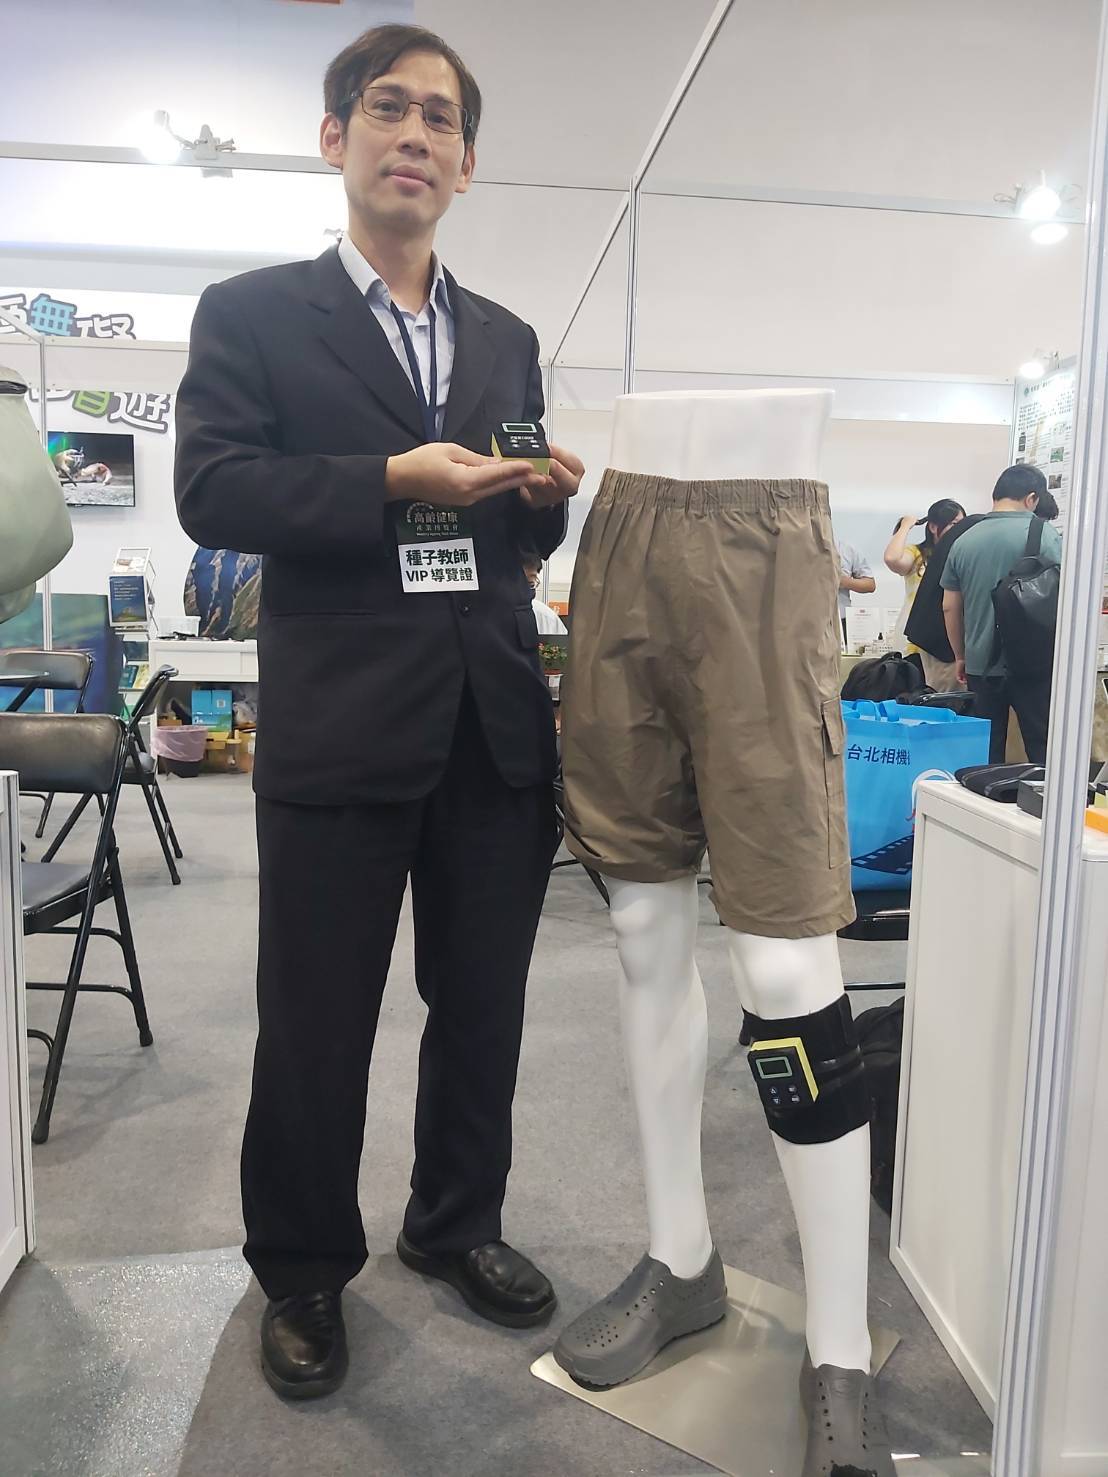 臺北醫學大學生物醫學工程系主任彭志維開發高齡智慧步行輔具，透過裝置與電流刺激，可以改善病患步態不穩的情況。